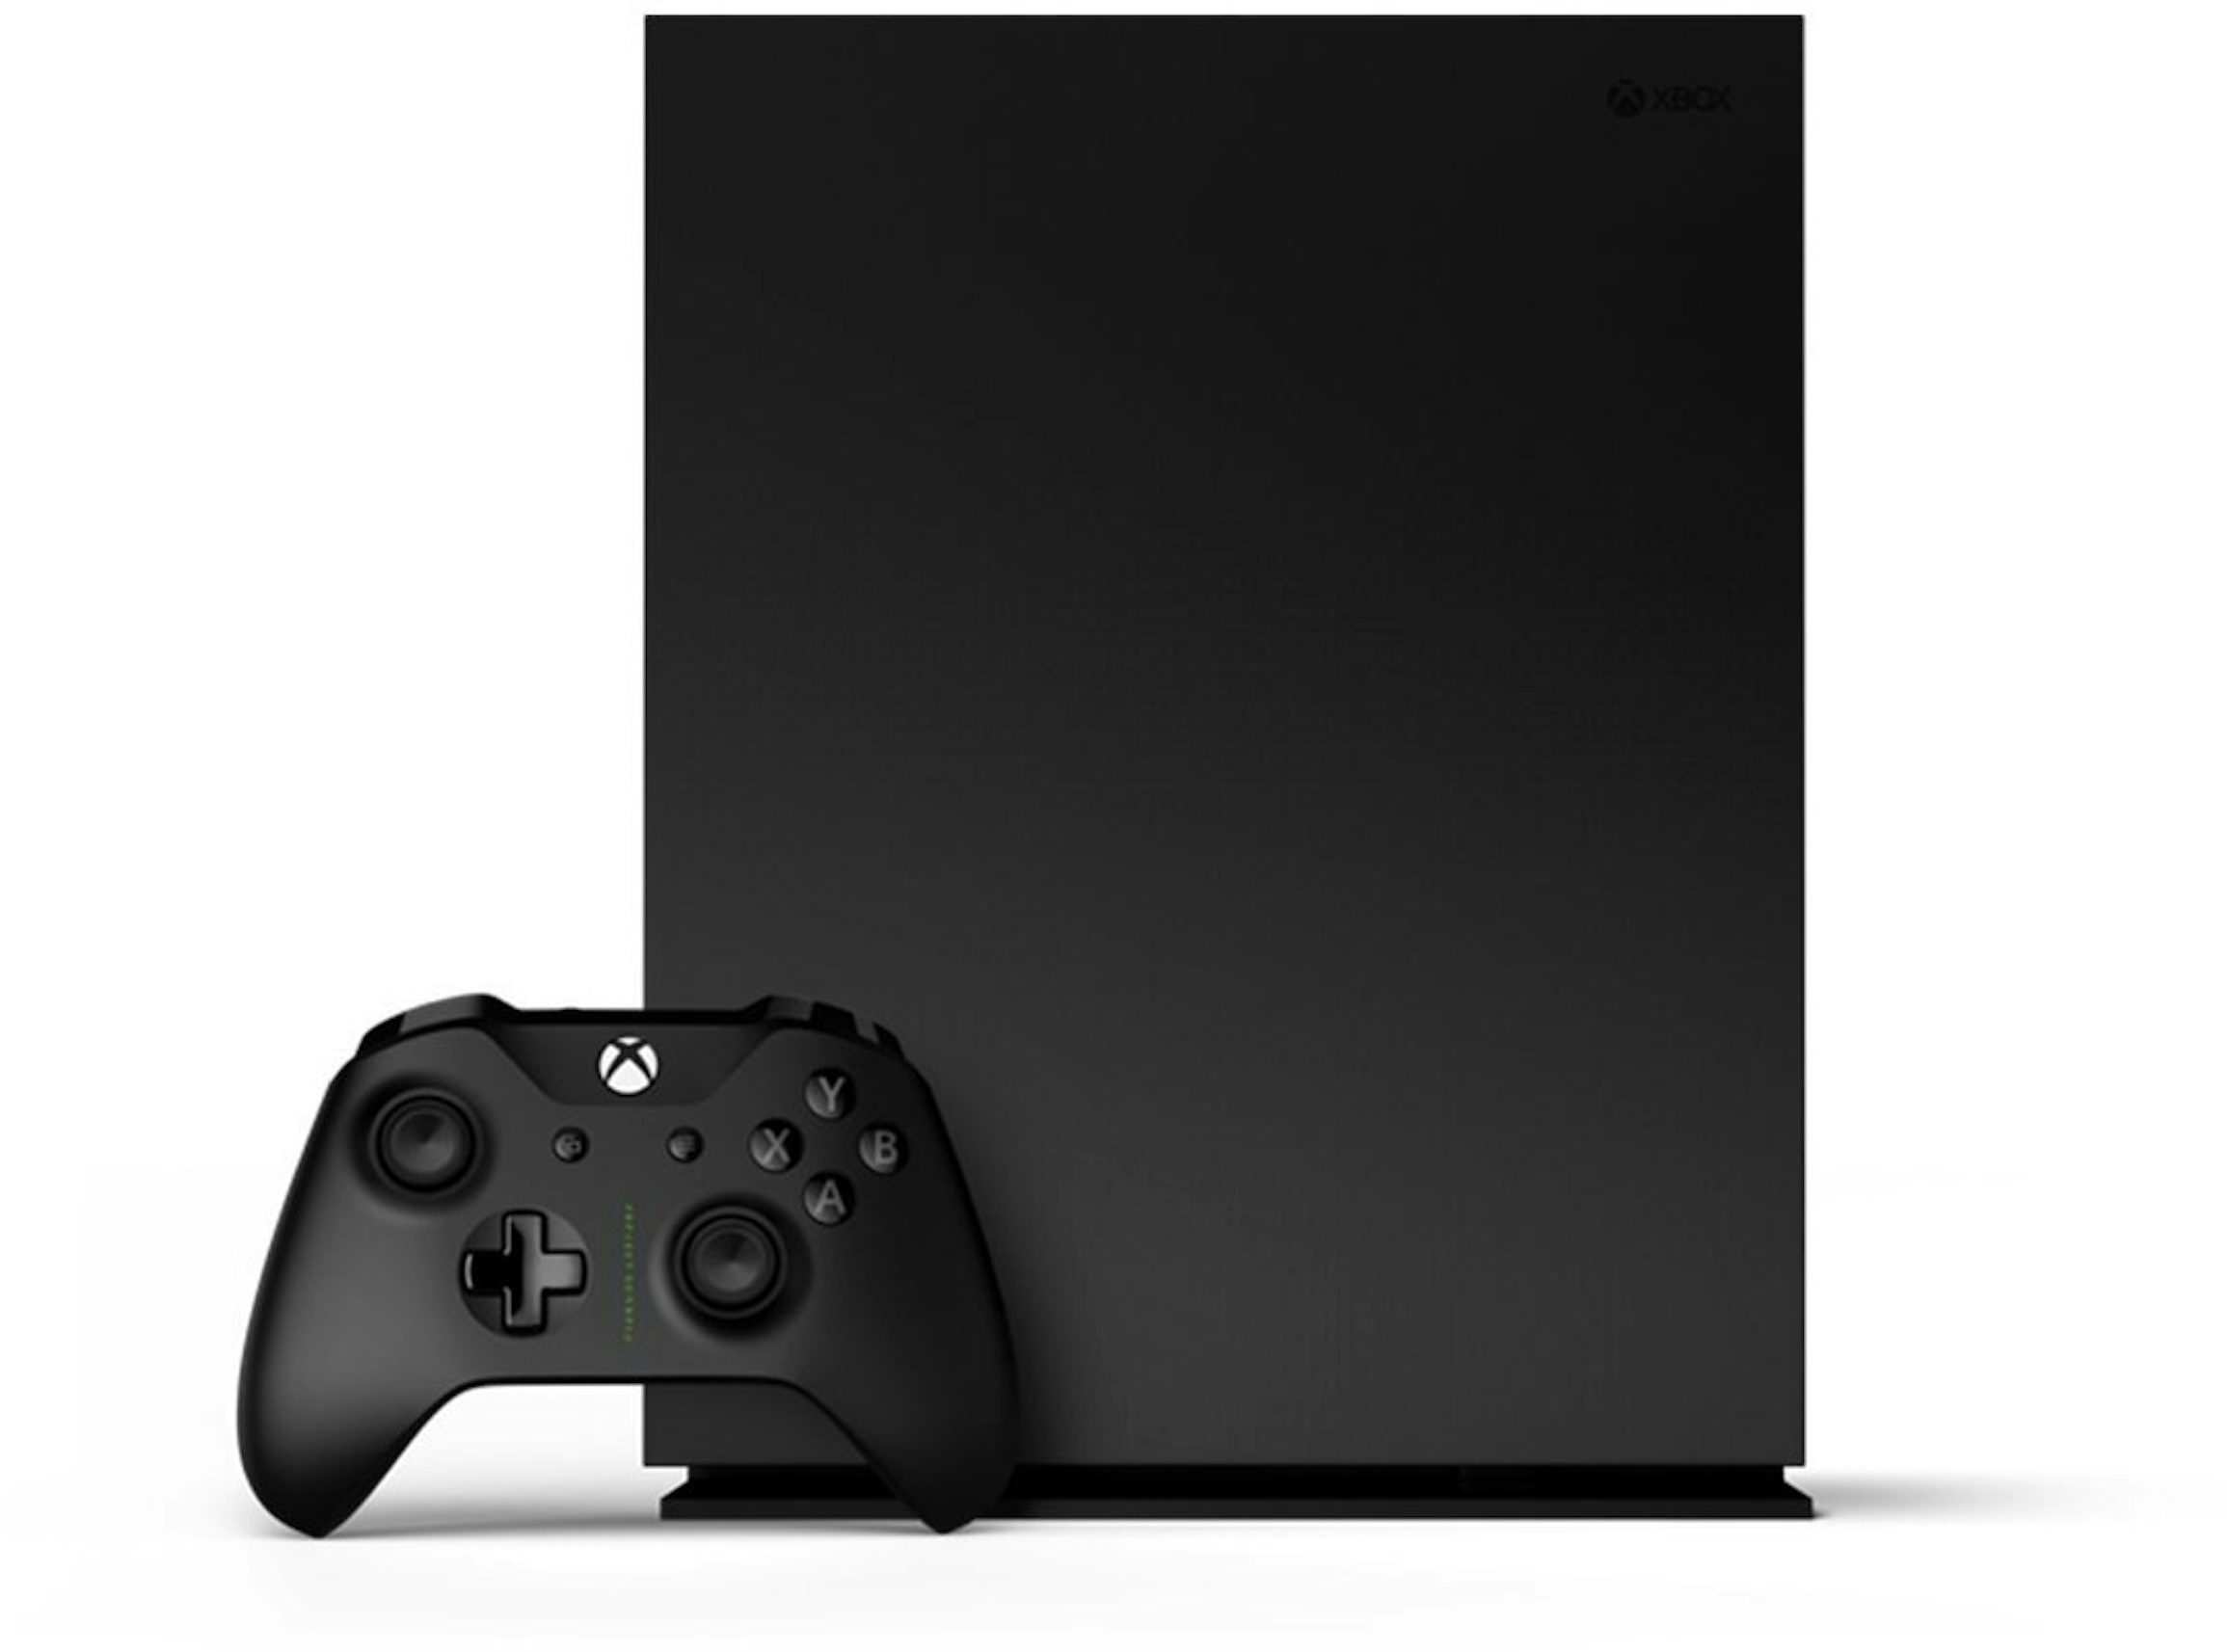 Microsoft Xbox One X 1TB Console White